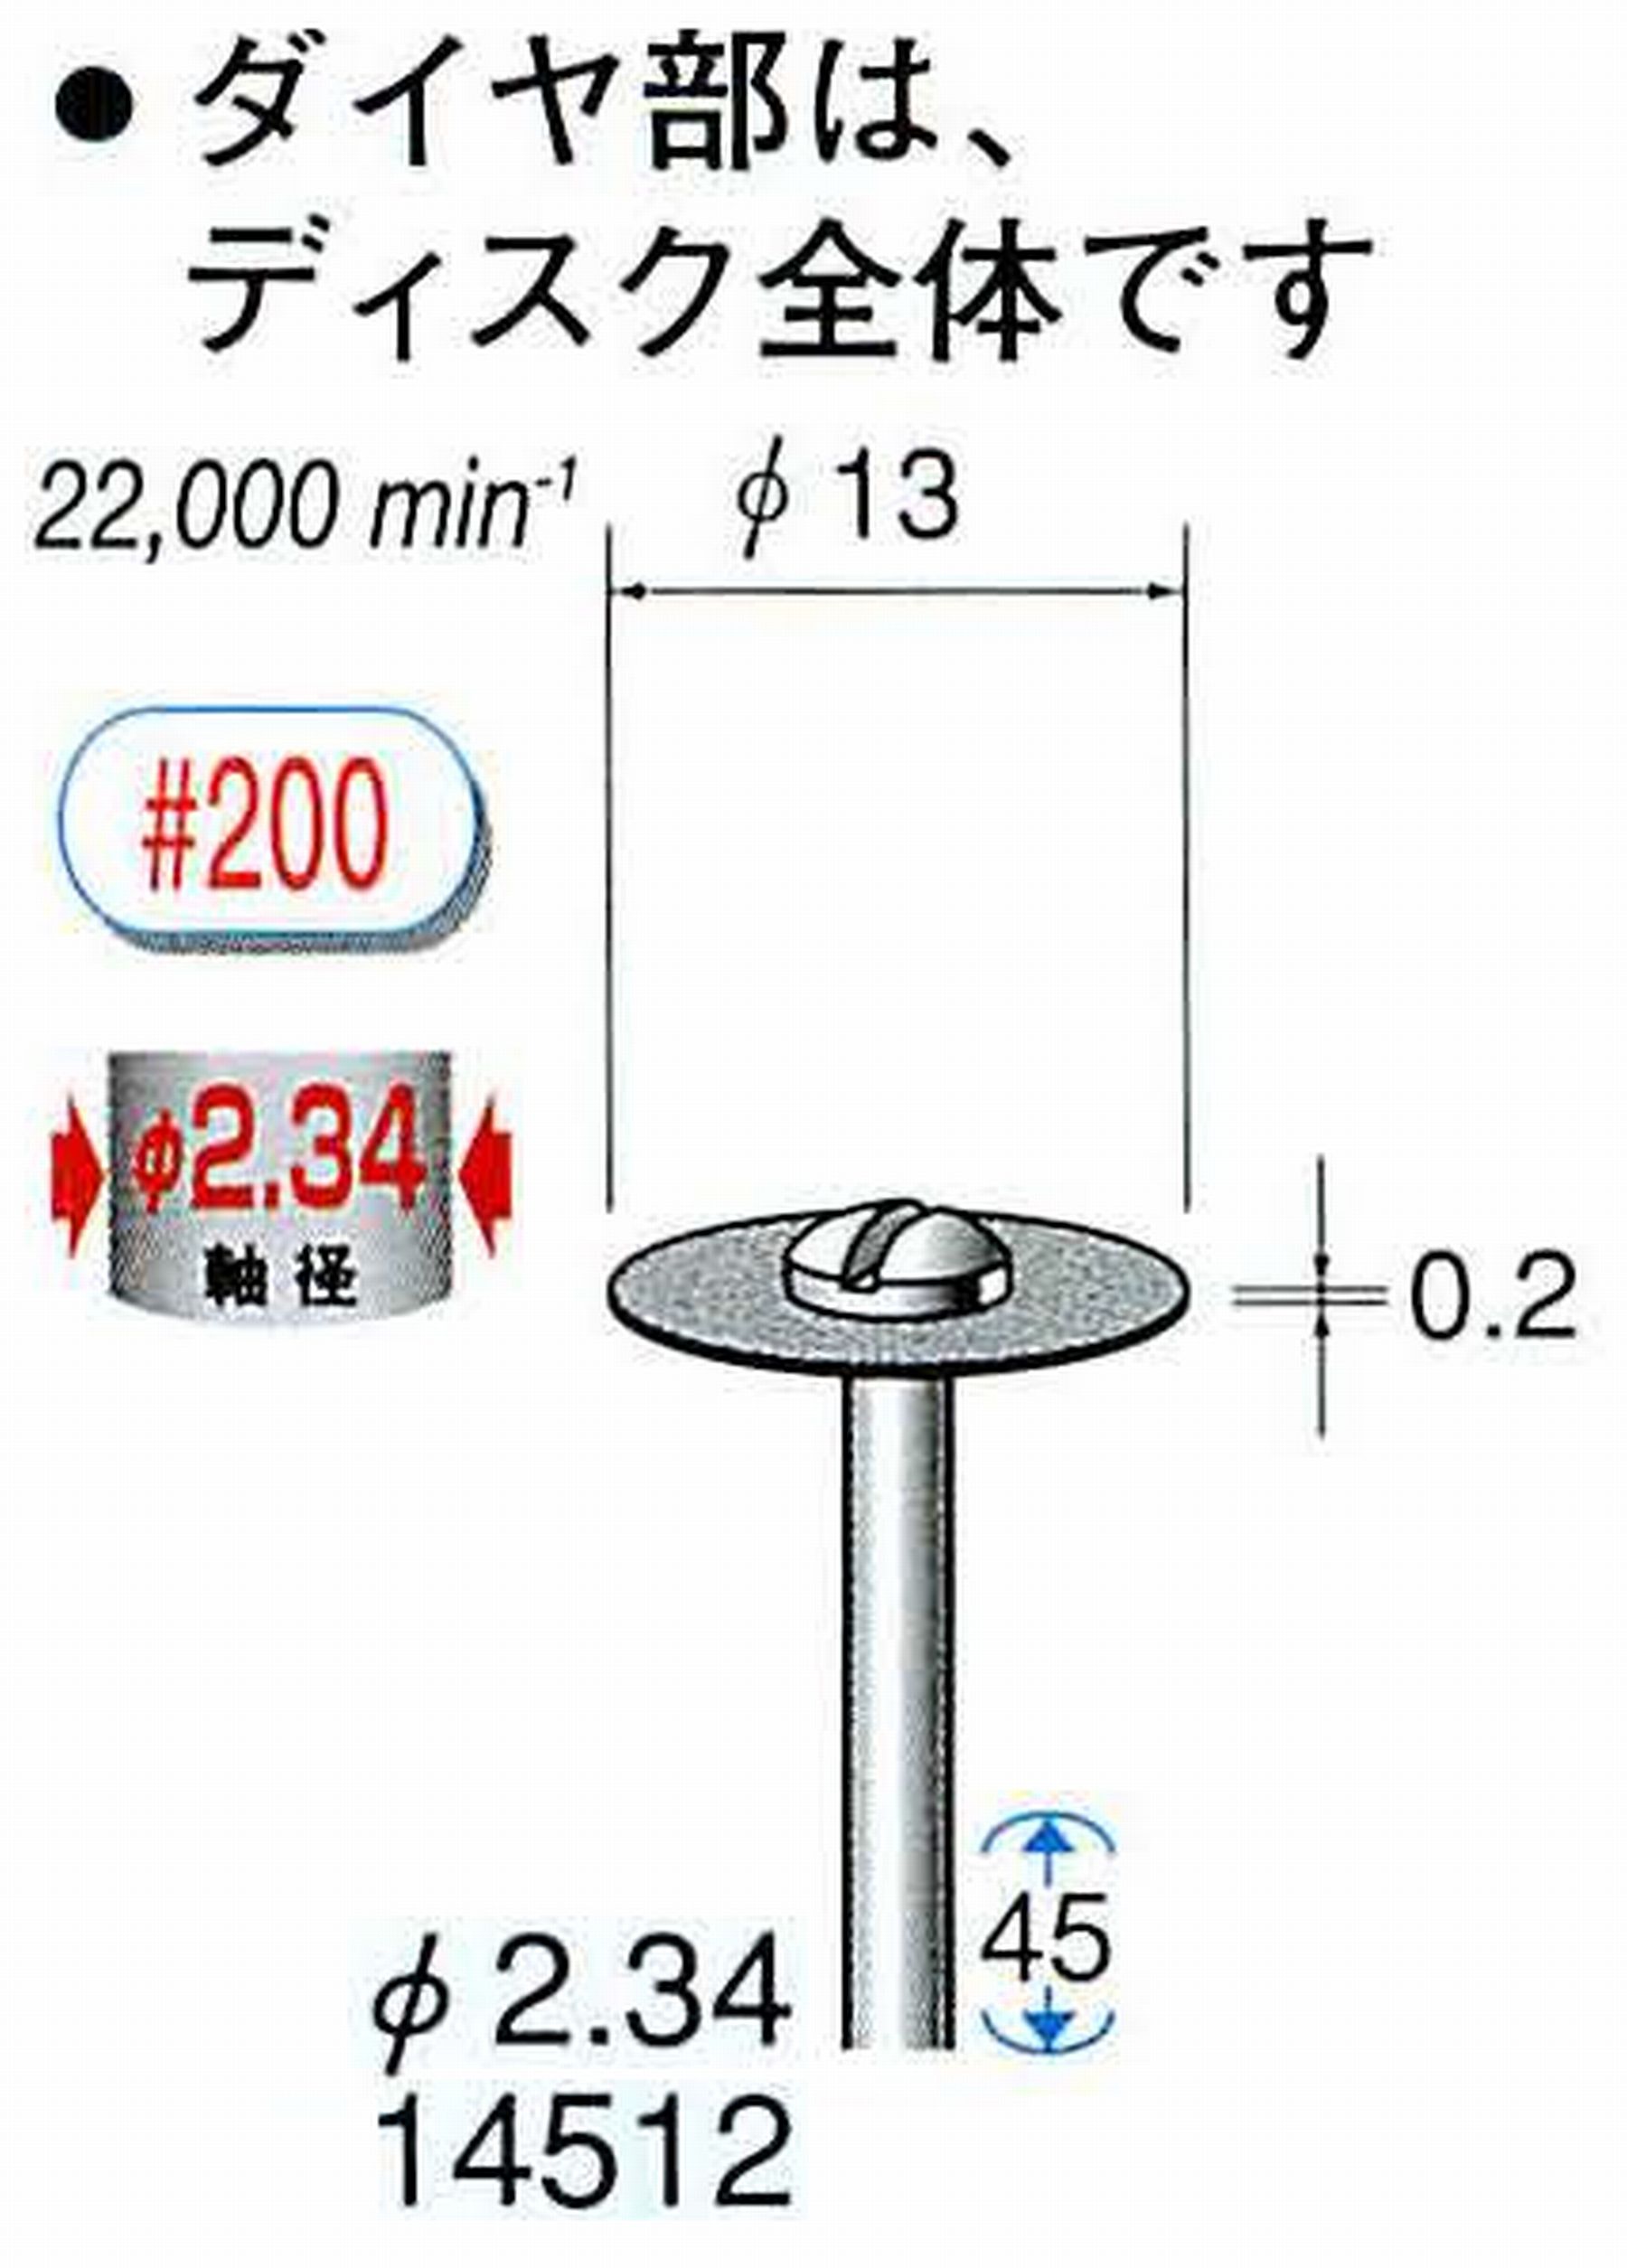 ナカニシ/NAKANISHI ダイヤモンドカッティングディスク メタルボンドタイプ 軸径(シャンク)φ2.34mm 14512